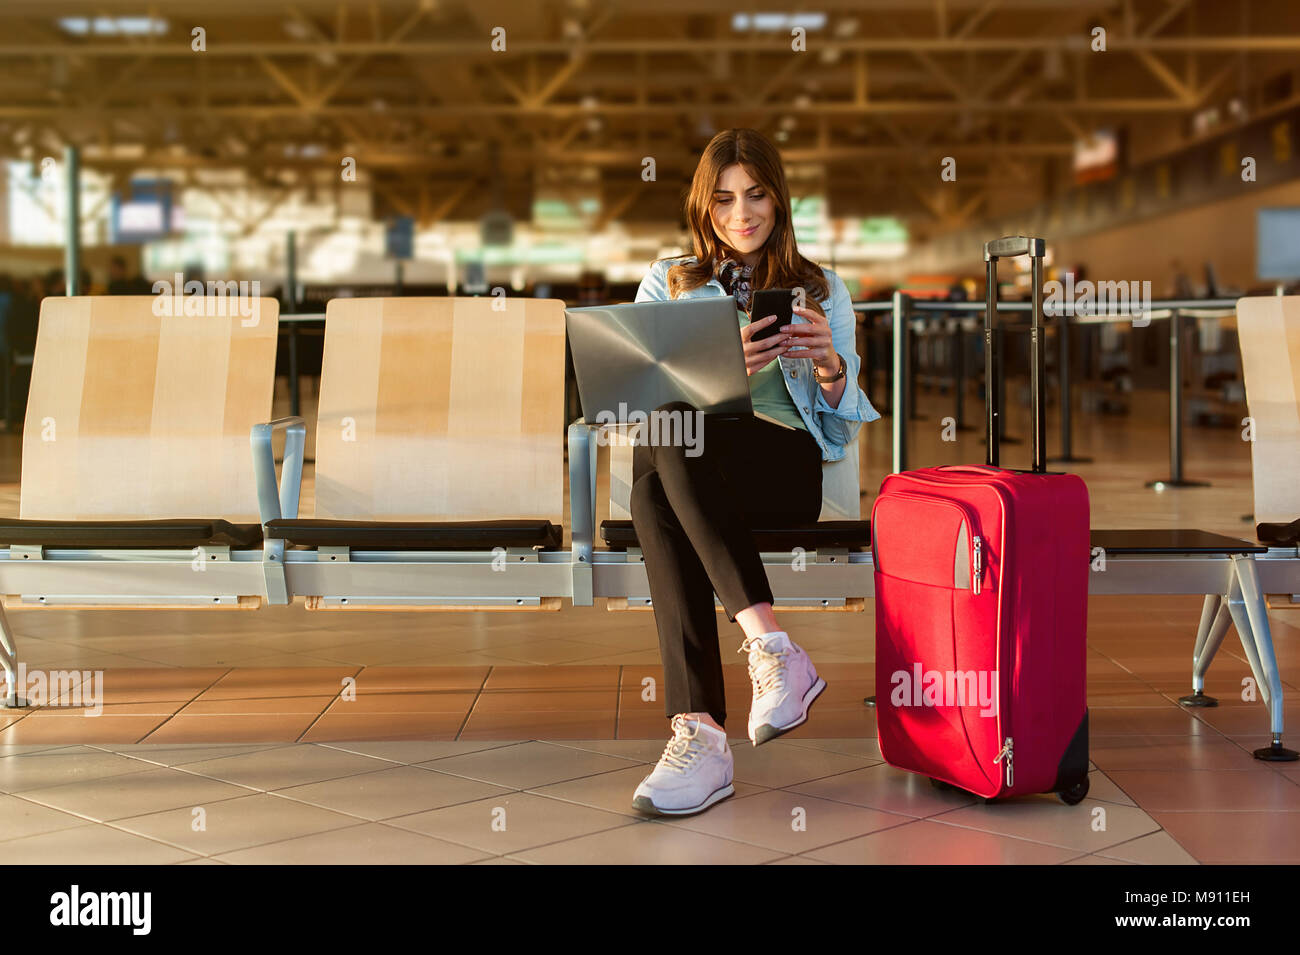 Aeropuerto joven pasajera en el teléfono inteligente y ordenador portátil sentado en la terminal hall mientras espera su vuelo Foto de stock